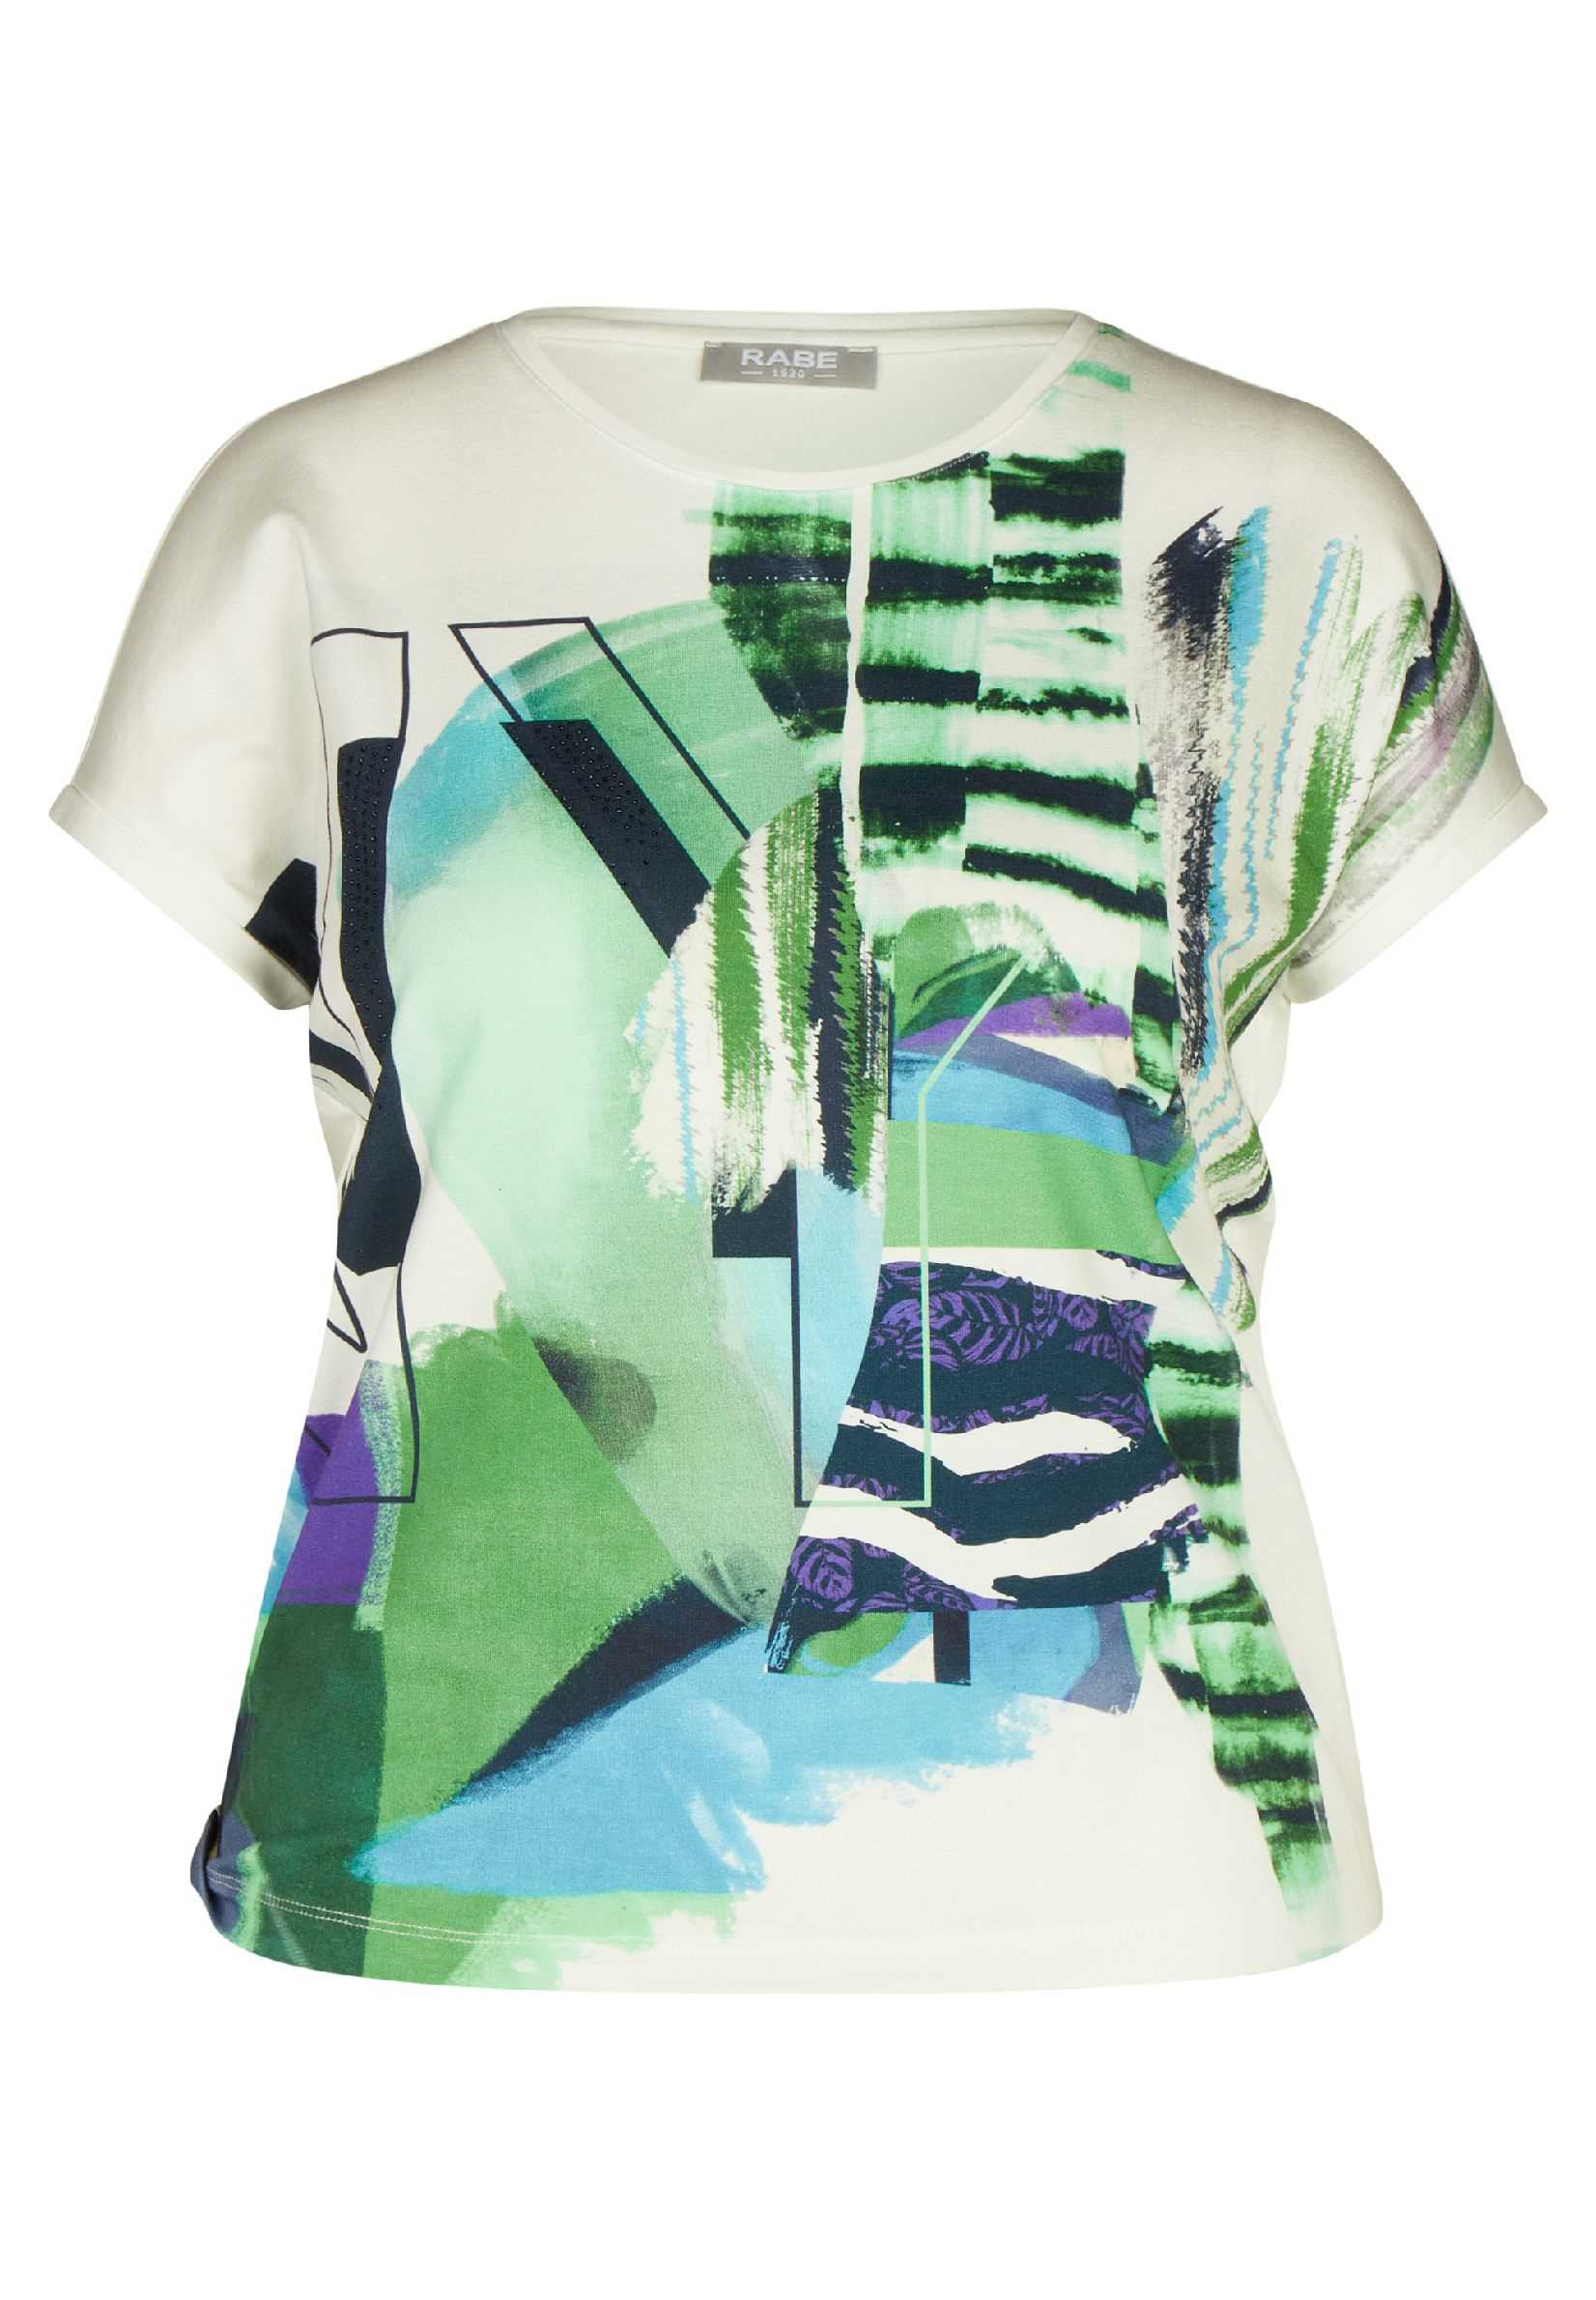 Mariëlle E | Natur Daniëlle Print Groen T-Shirt Mode Rabe / Exclusief